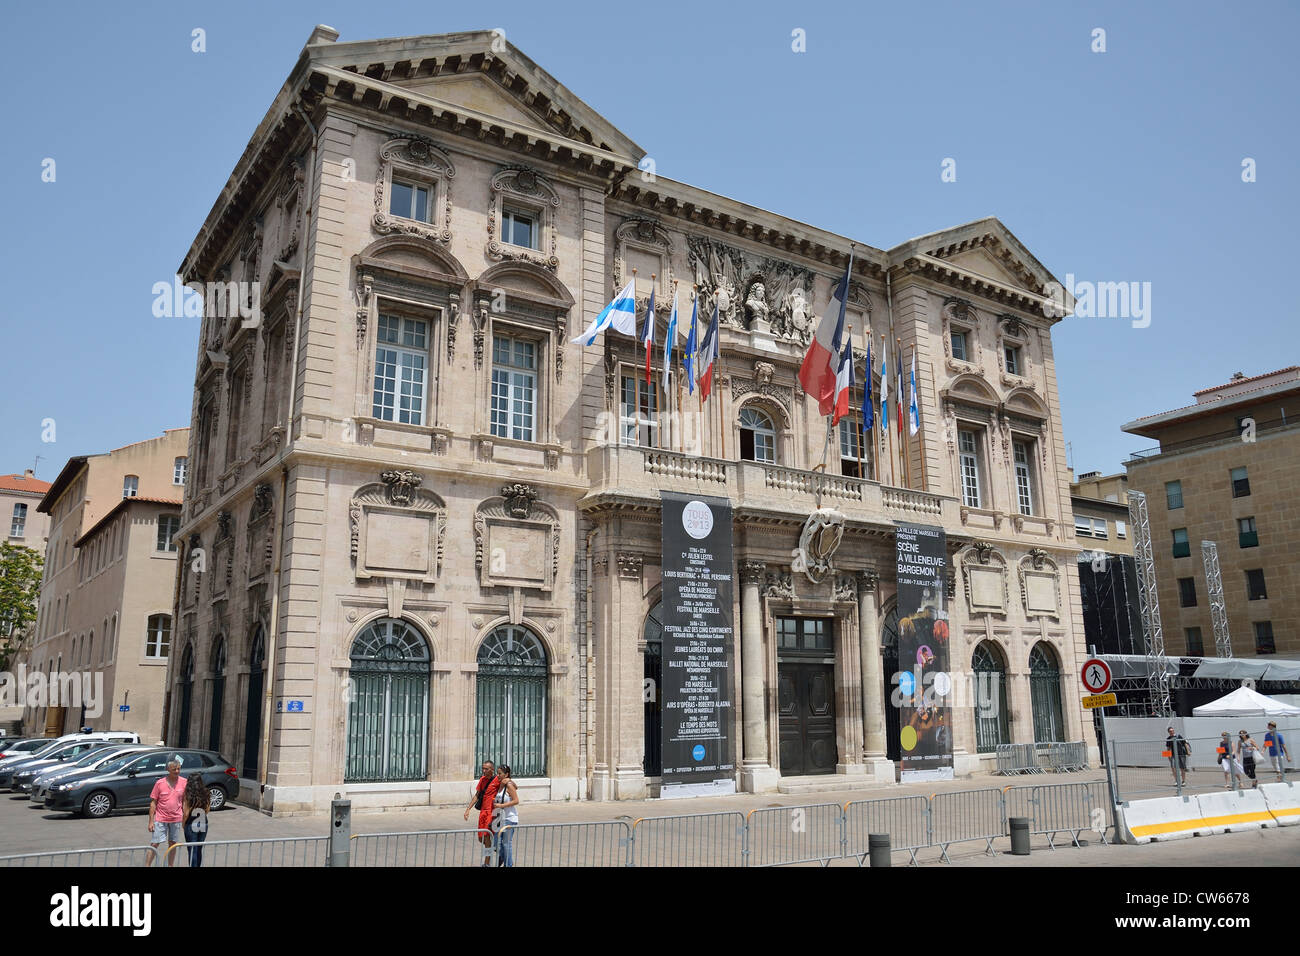 Mairie de Marseille theatre, Quai du Port, Marseille, Bouches-du-Rhône Department, Provence-Alpes-Côte d'Azur, France Stock Photo